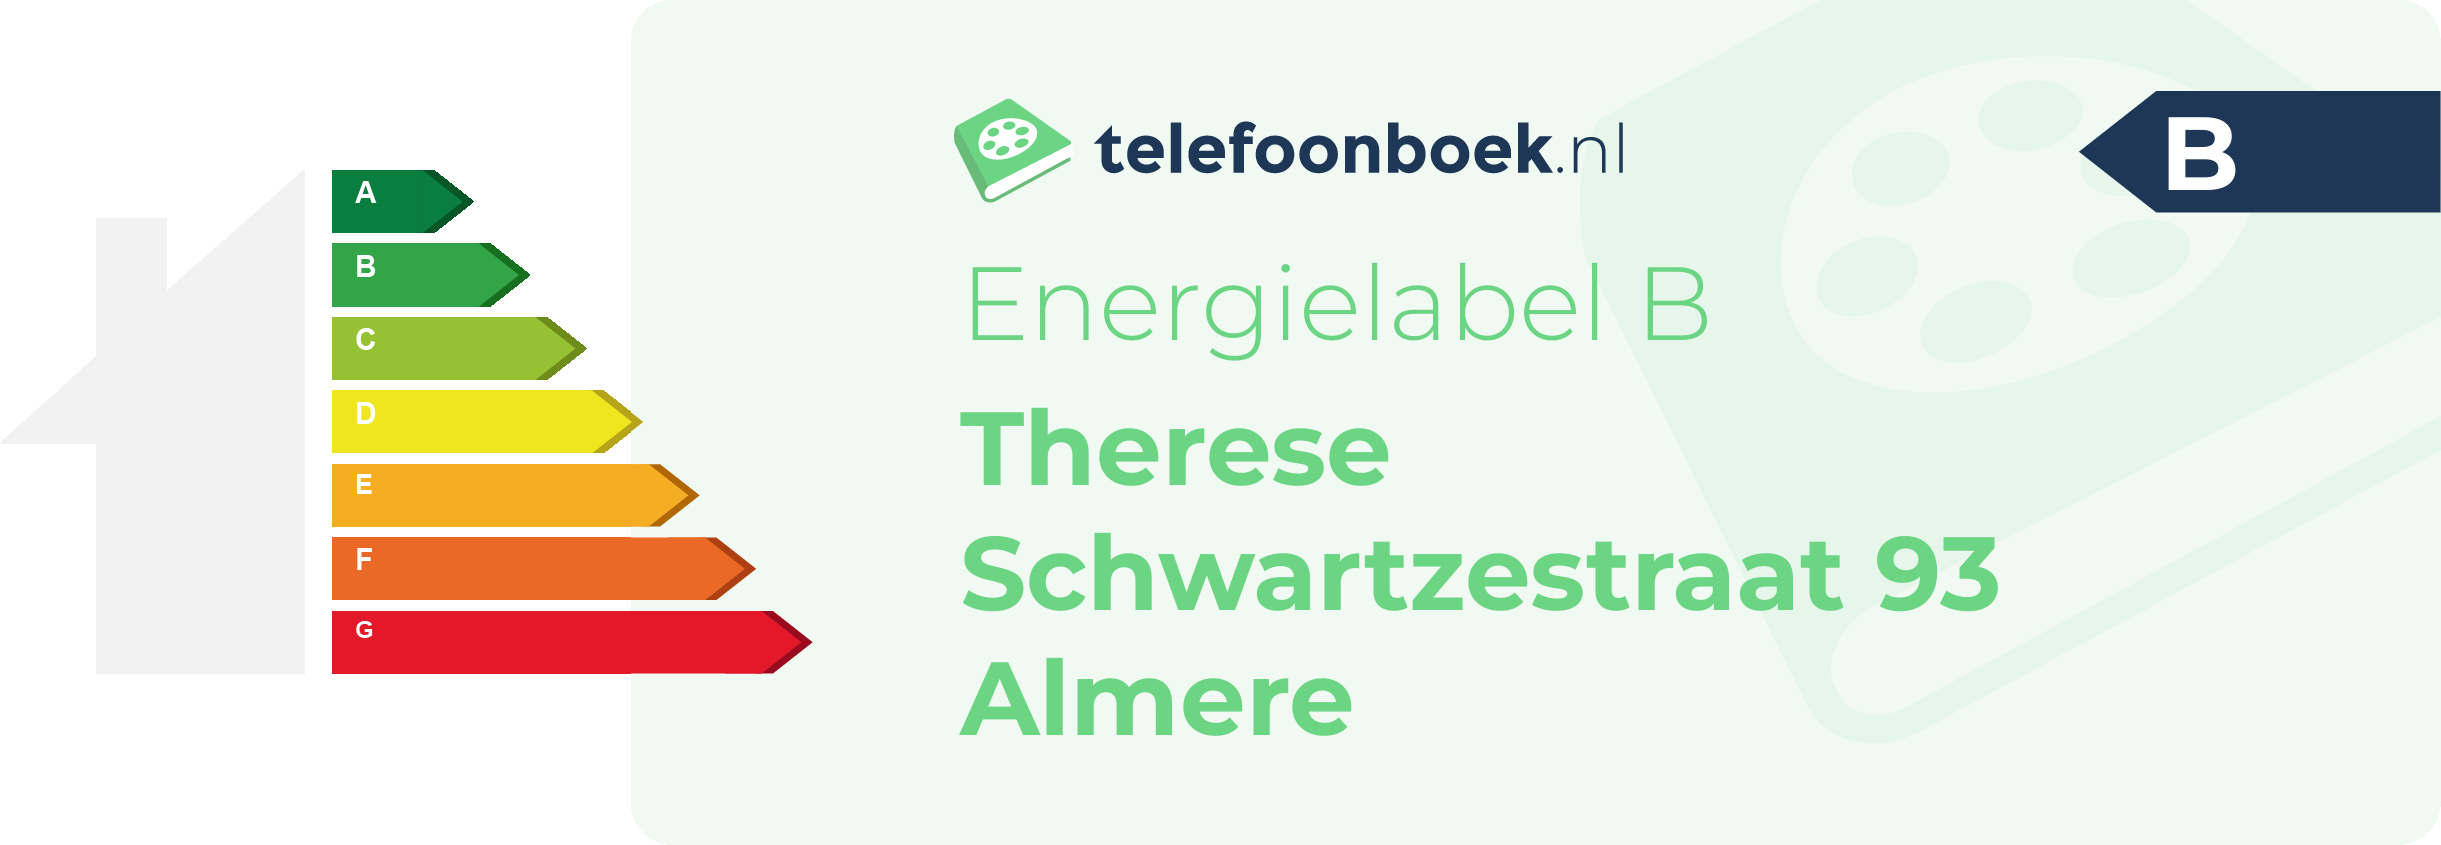 Energielabel Therese Schwartzestraat 93 Almere